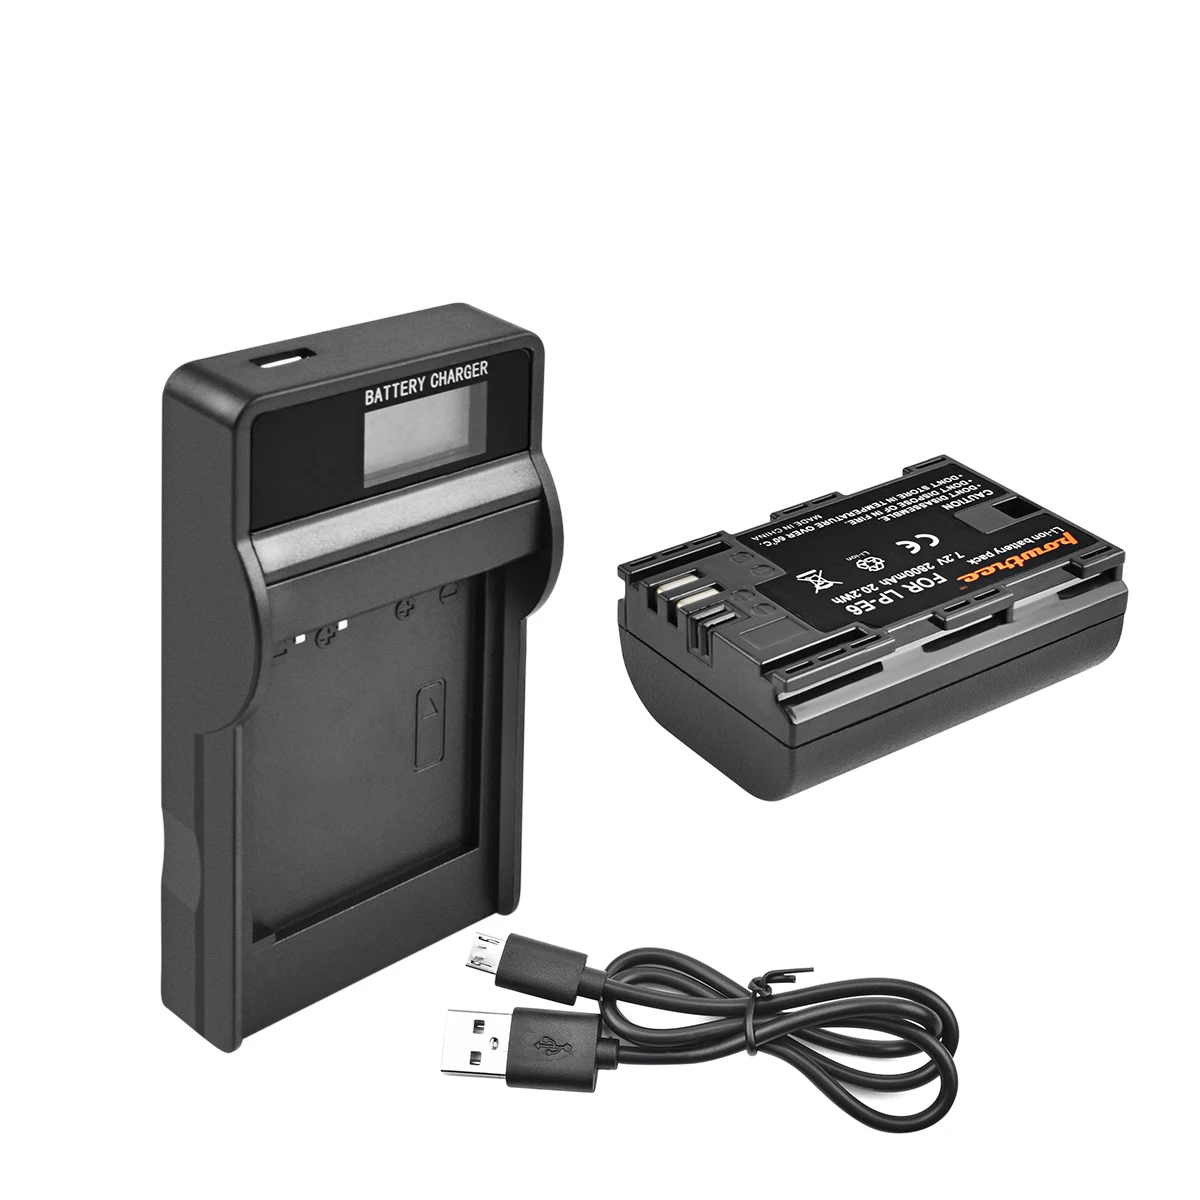 Bonadget батарея+ USB двойное зарядное устройство для Canon камера LP-E6 Замена LPE6 LP E6 EOS 6D 7D 5D Mark II аккумуляторная батарея - Цвет: 1pack LCD Charger